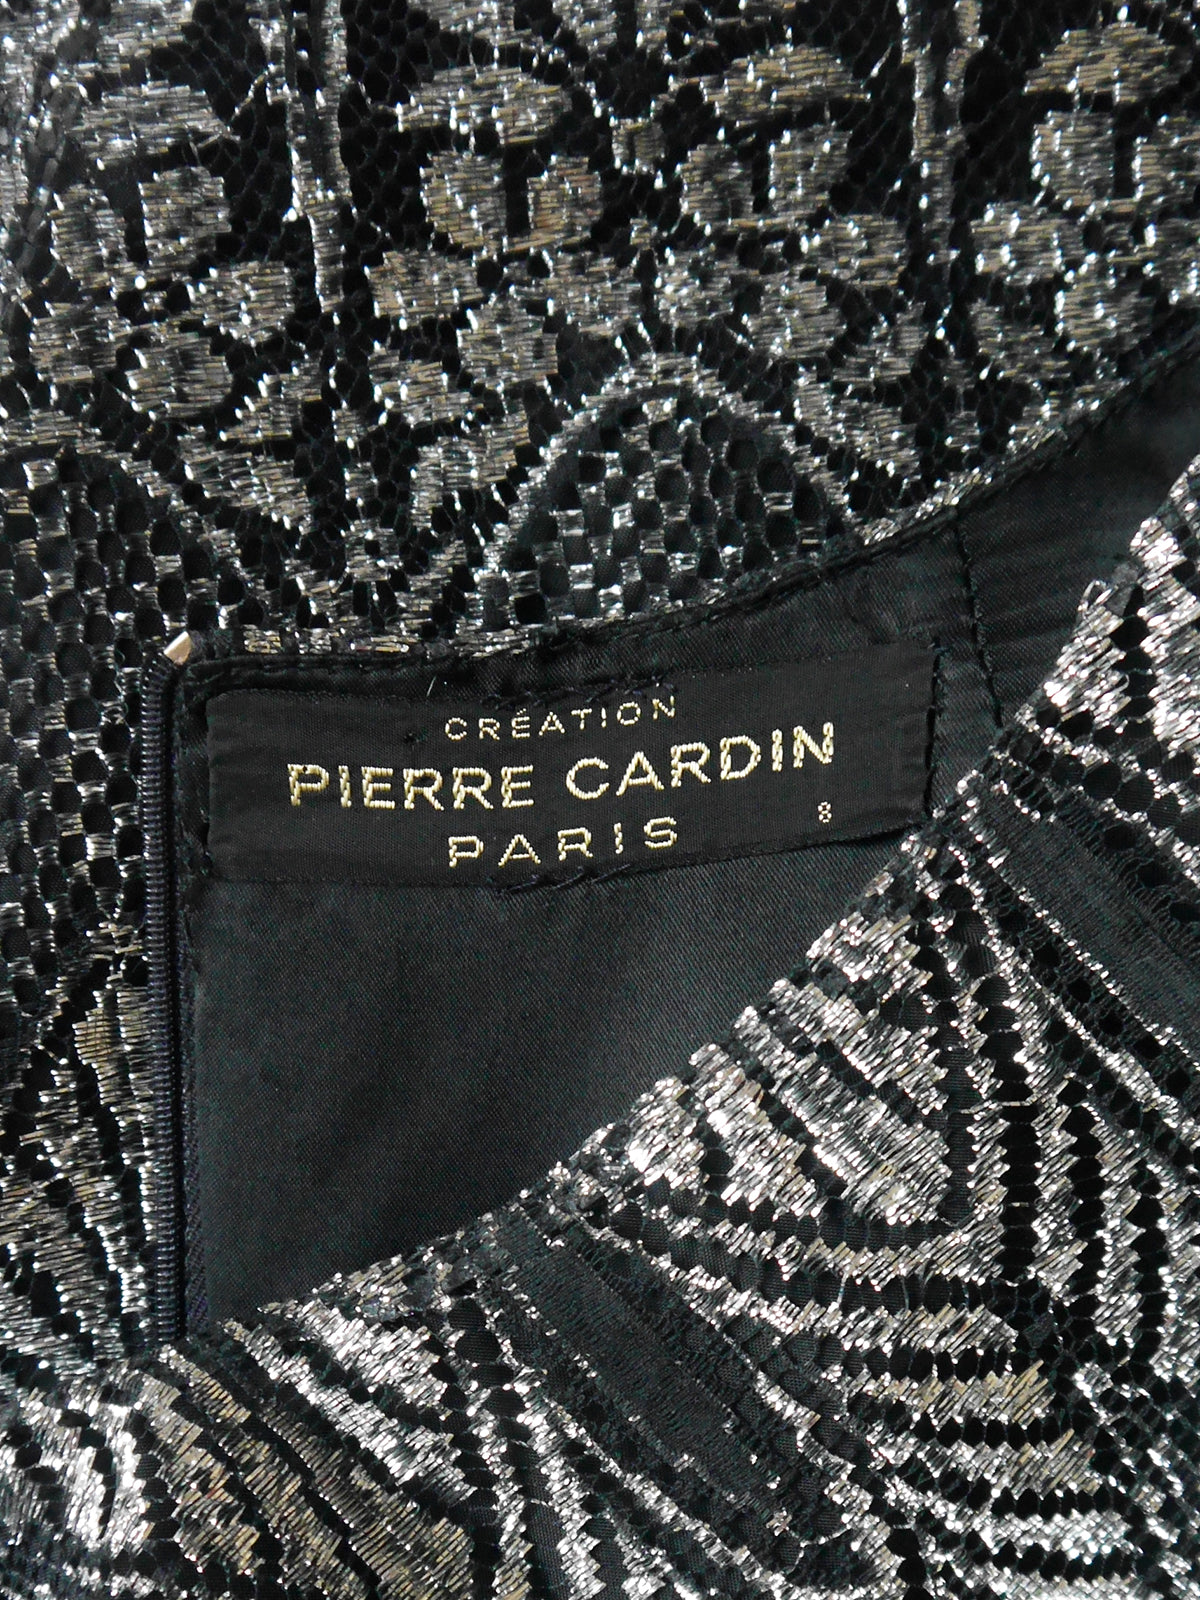 PIERRE CARDIN c. 1970s Vintage Metallic Silver Lamé Lace Midi Evening Dress Size M